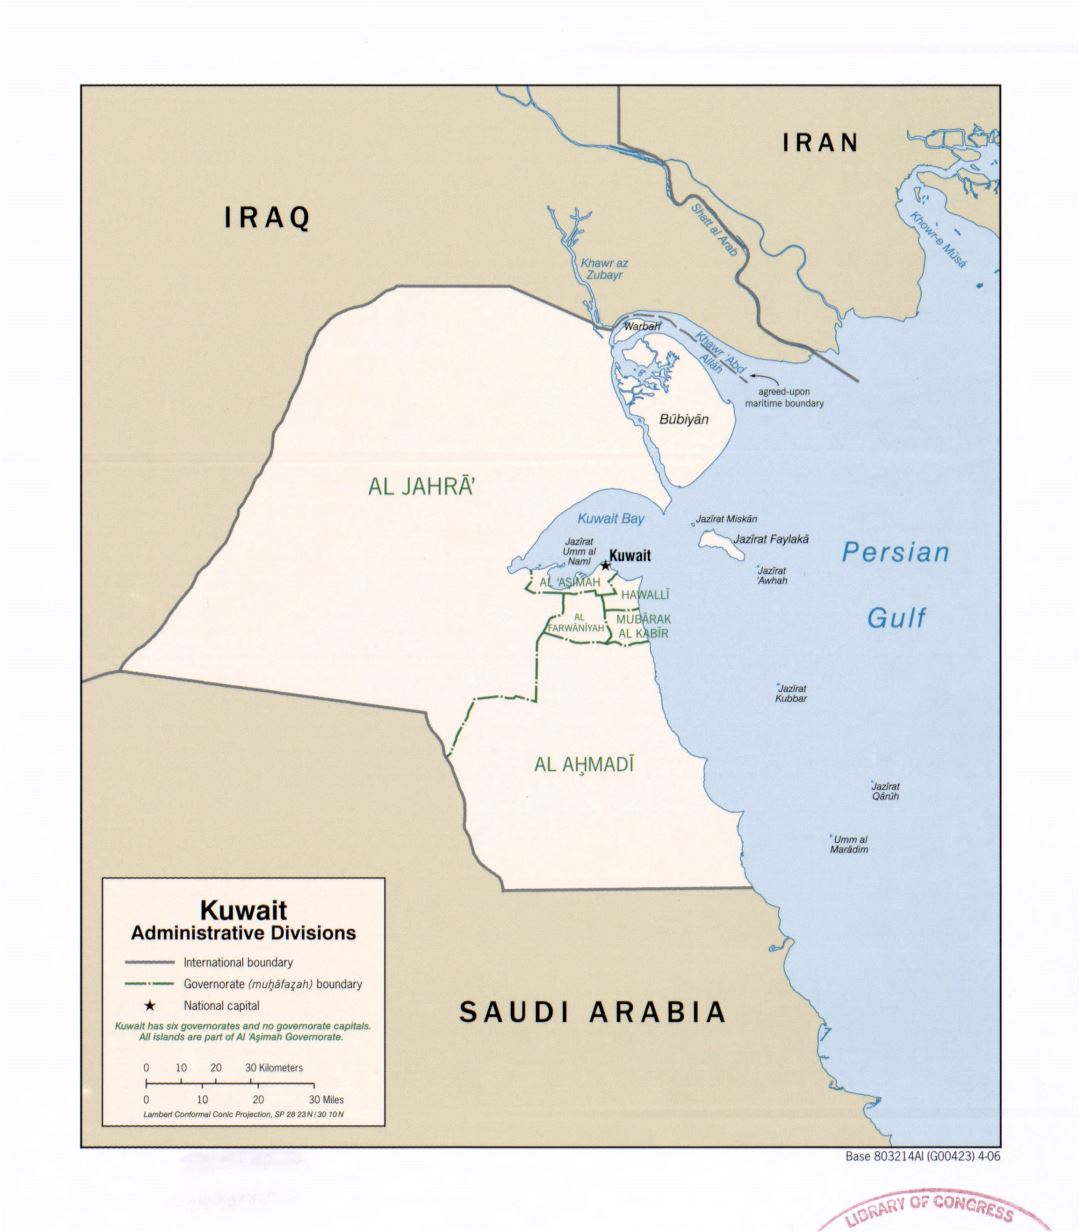 Grande detallado mapa de administrativas divisiones de Kuwait - 2006